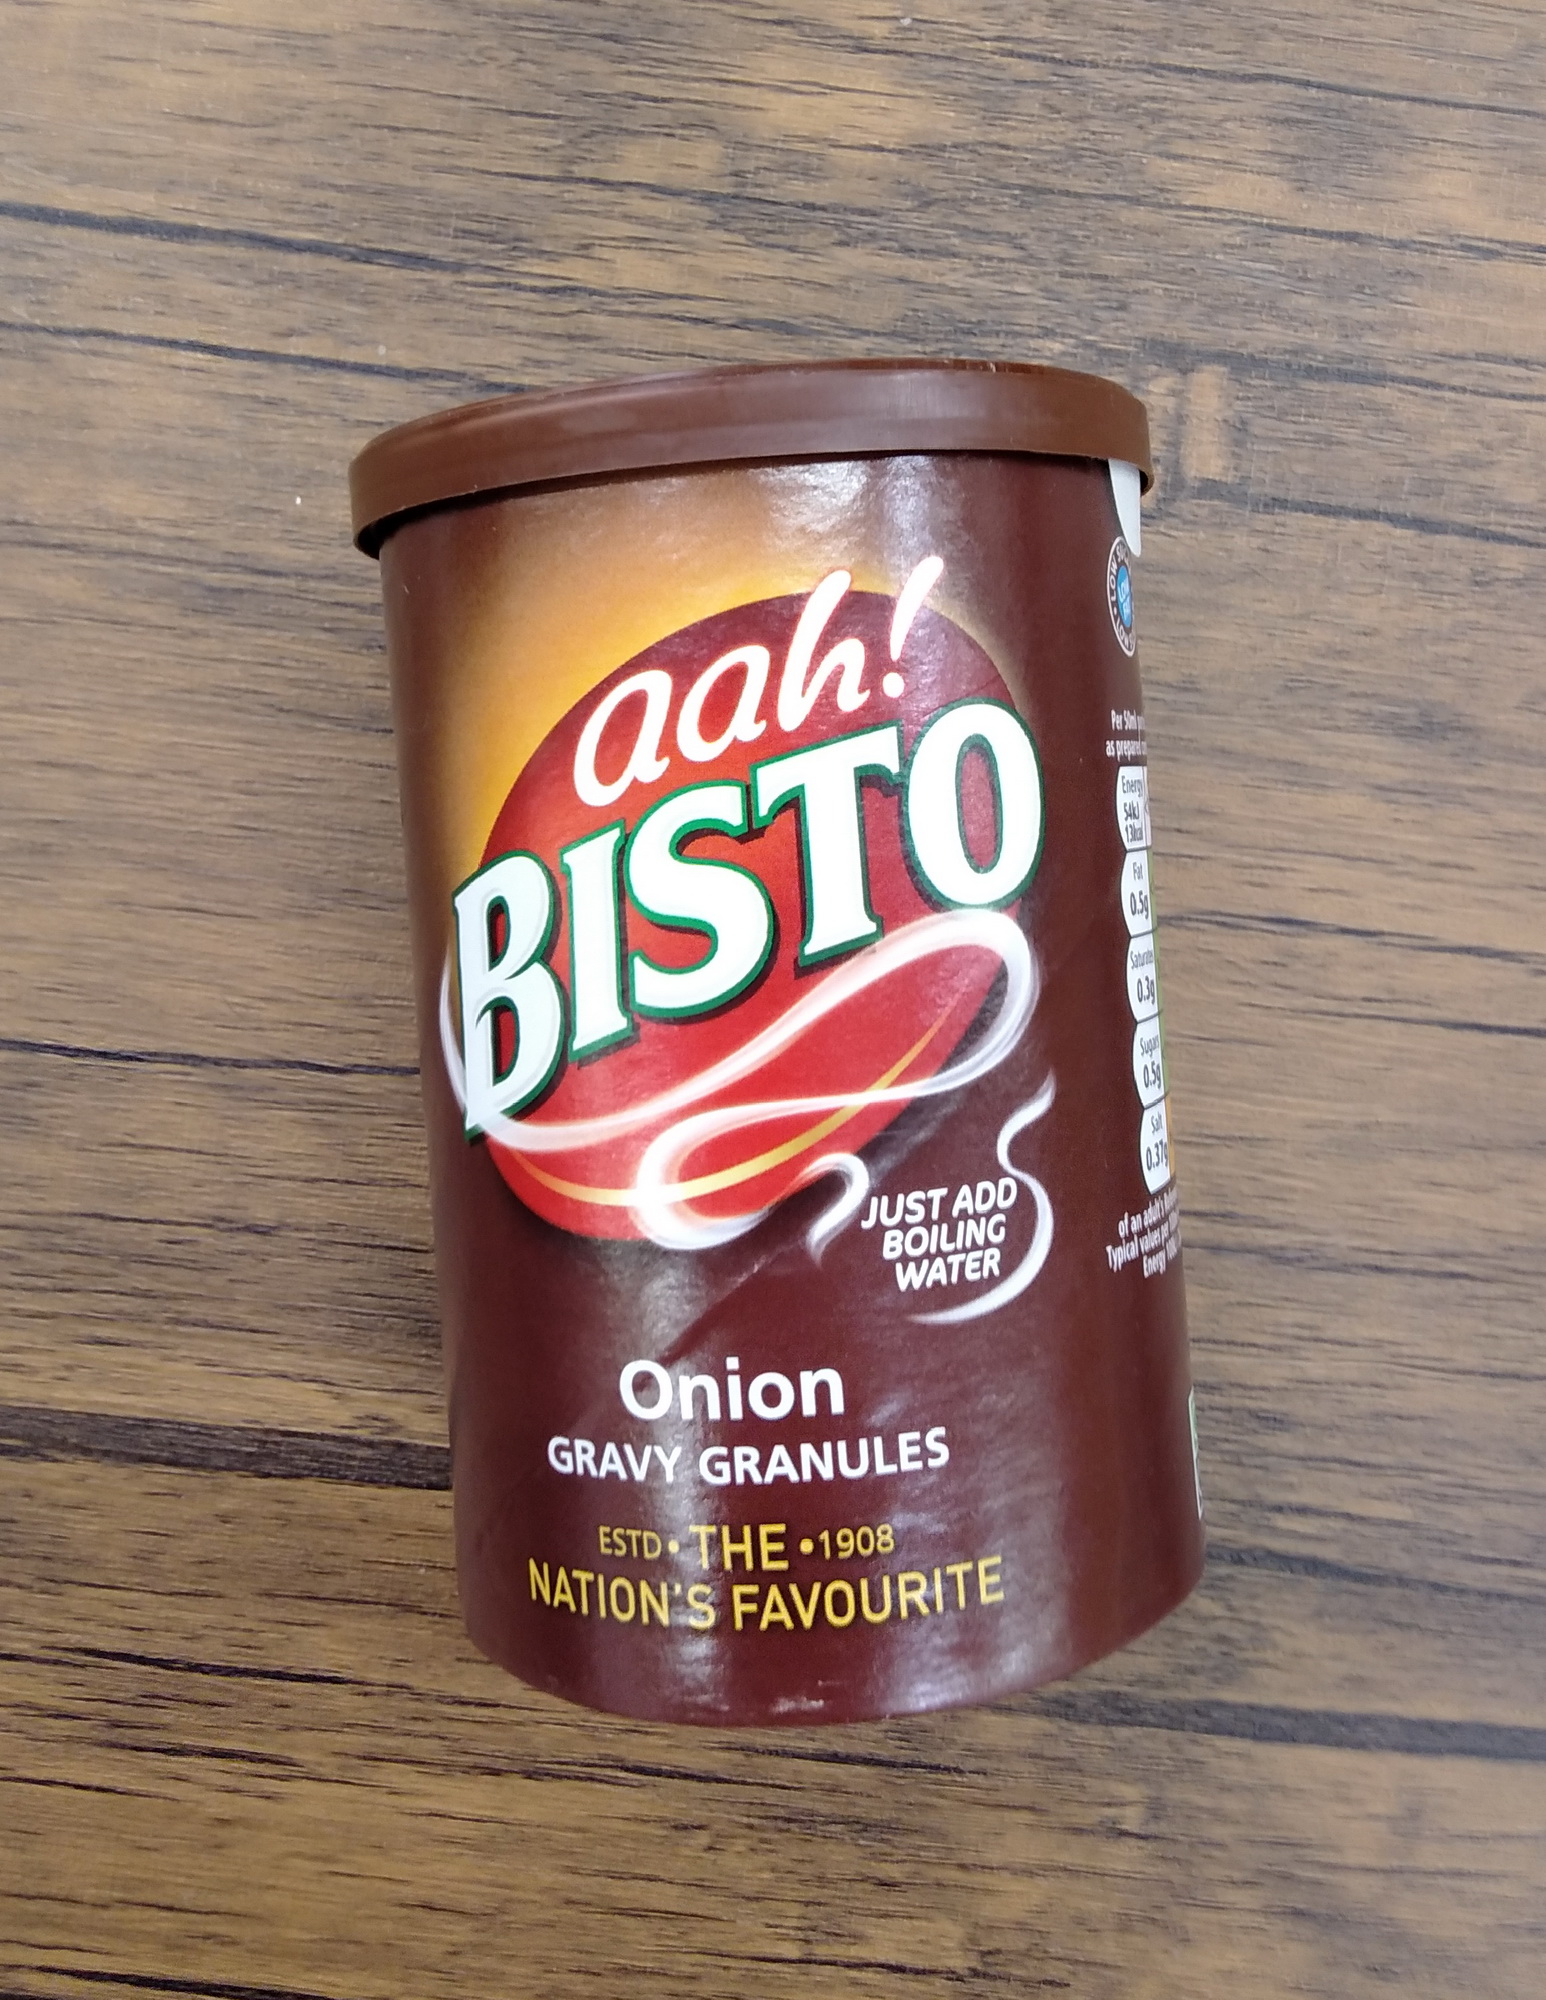 ซอสผงสำหรับทำน้ำเกรวี รสหัวหอม ตราบิสโต Gravy Granules Onion (Bisto Brand) 170 กรัม นำเข้าจากอังกฤษ บิสโต้เกรวี่หัวหอม สินค้าคุณภาพ The Nation's Favourite - Estd 1908